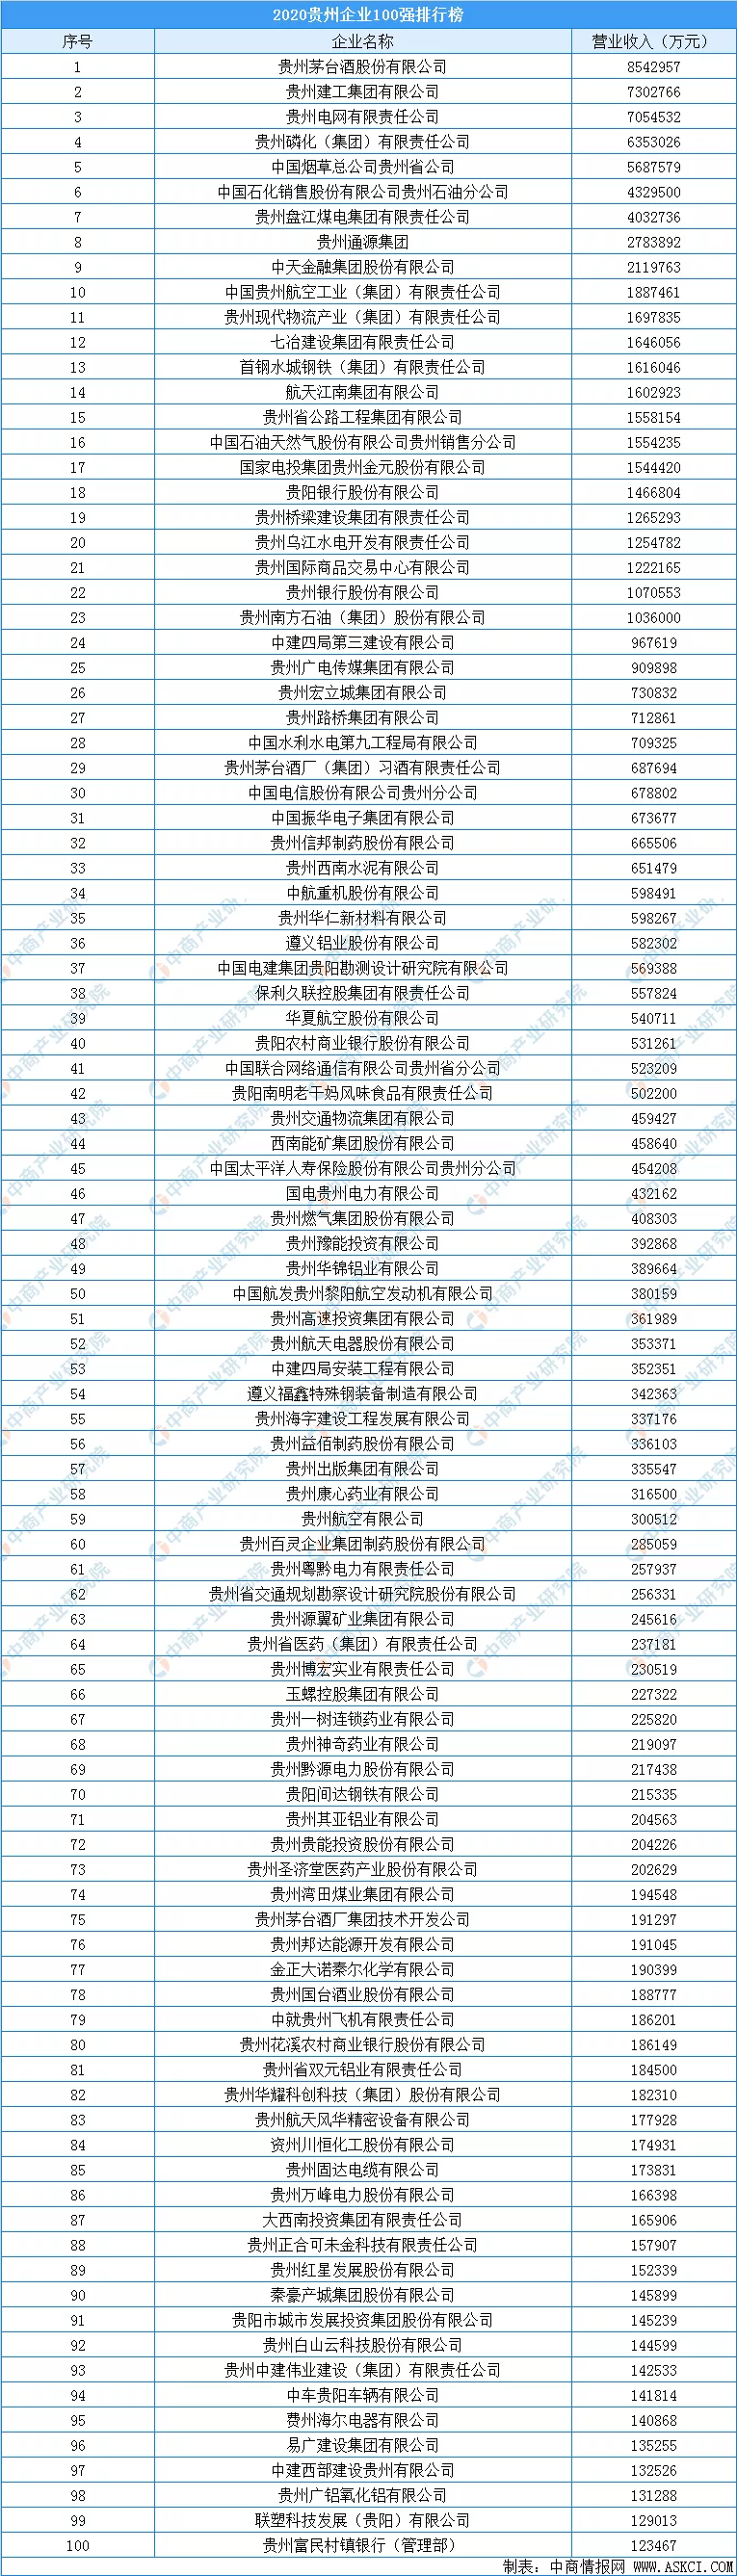 2020年贵州省企业100强排行榜发布